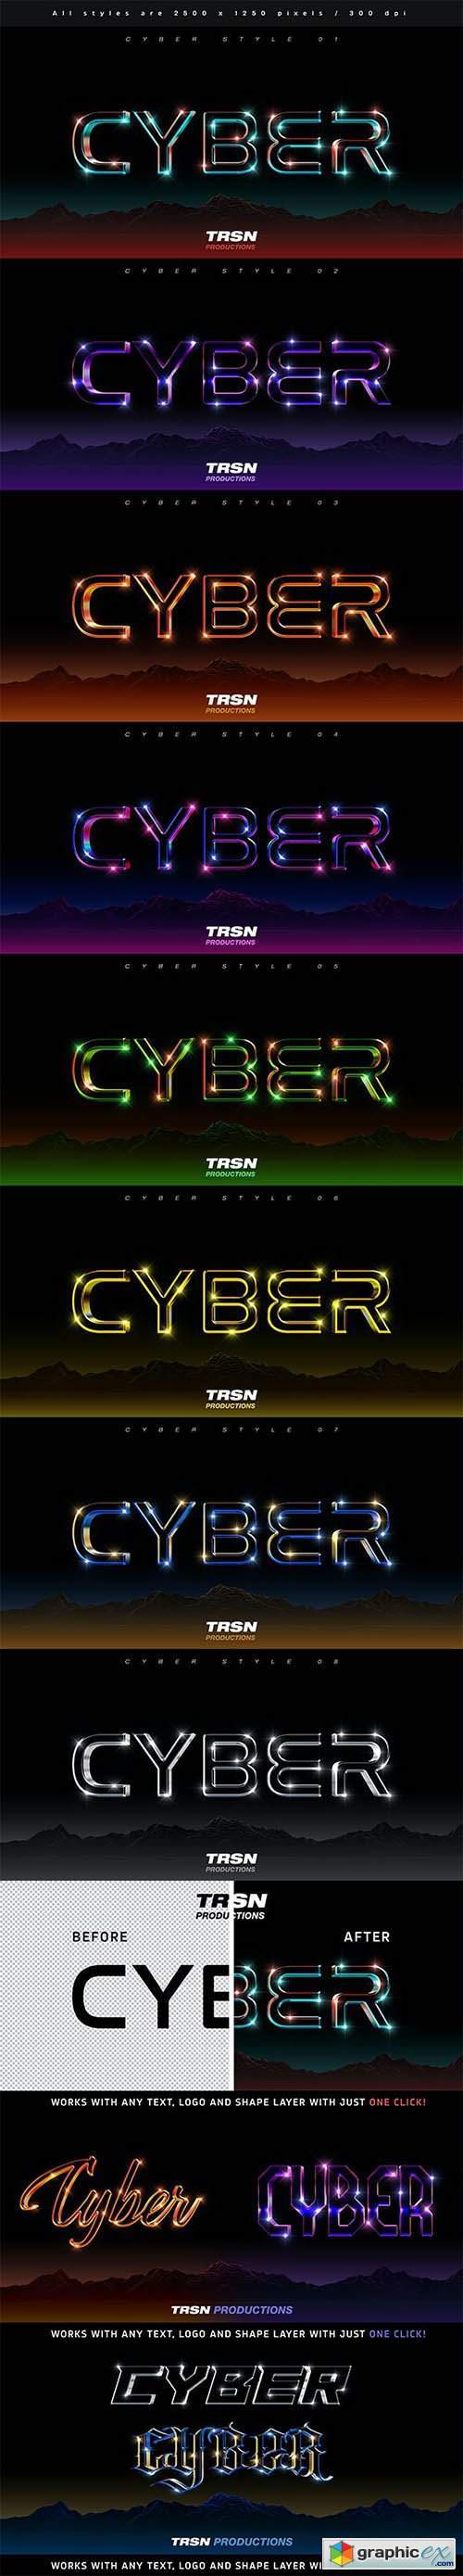 Cyber 3D Text Effect Vol 1